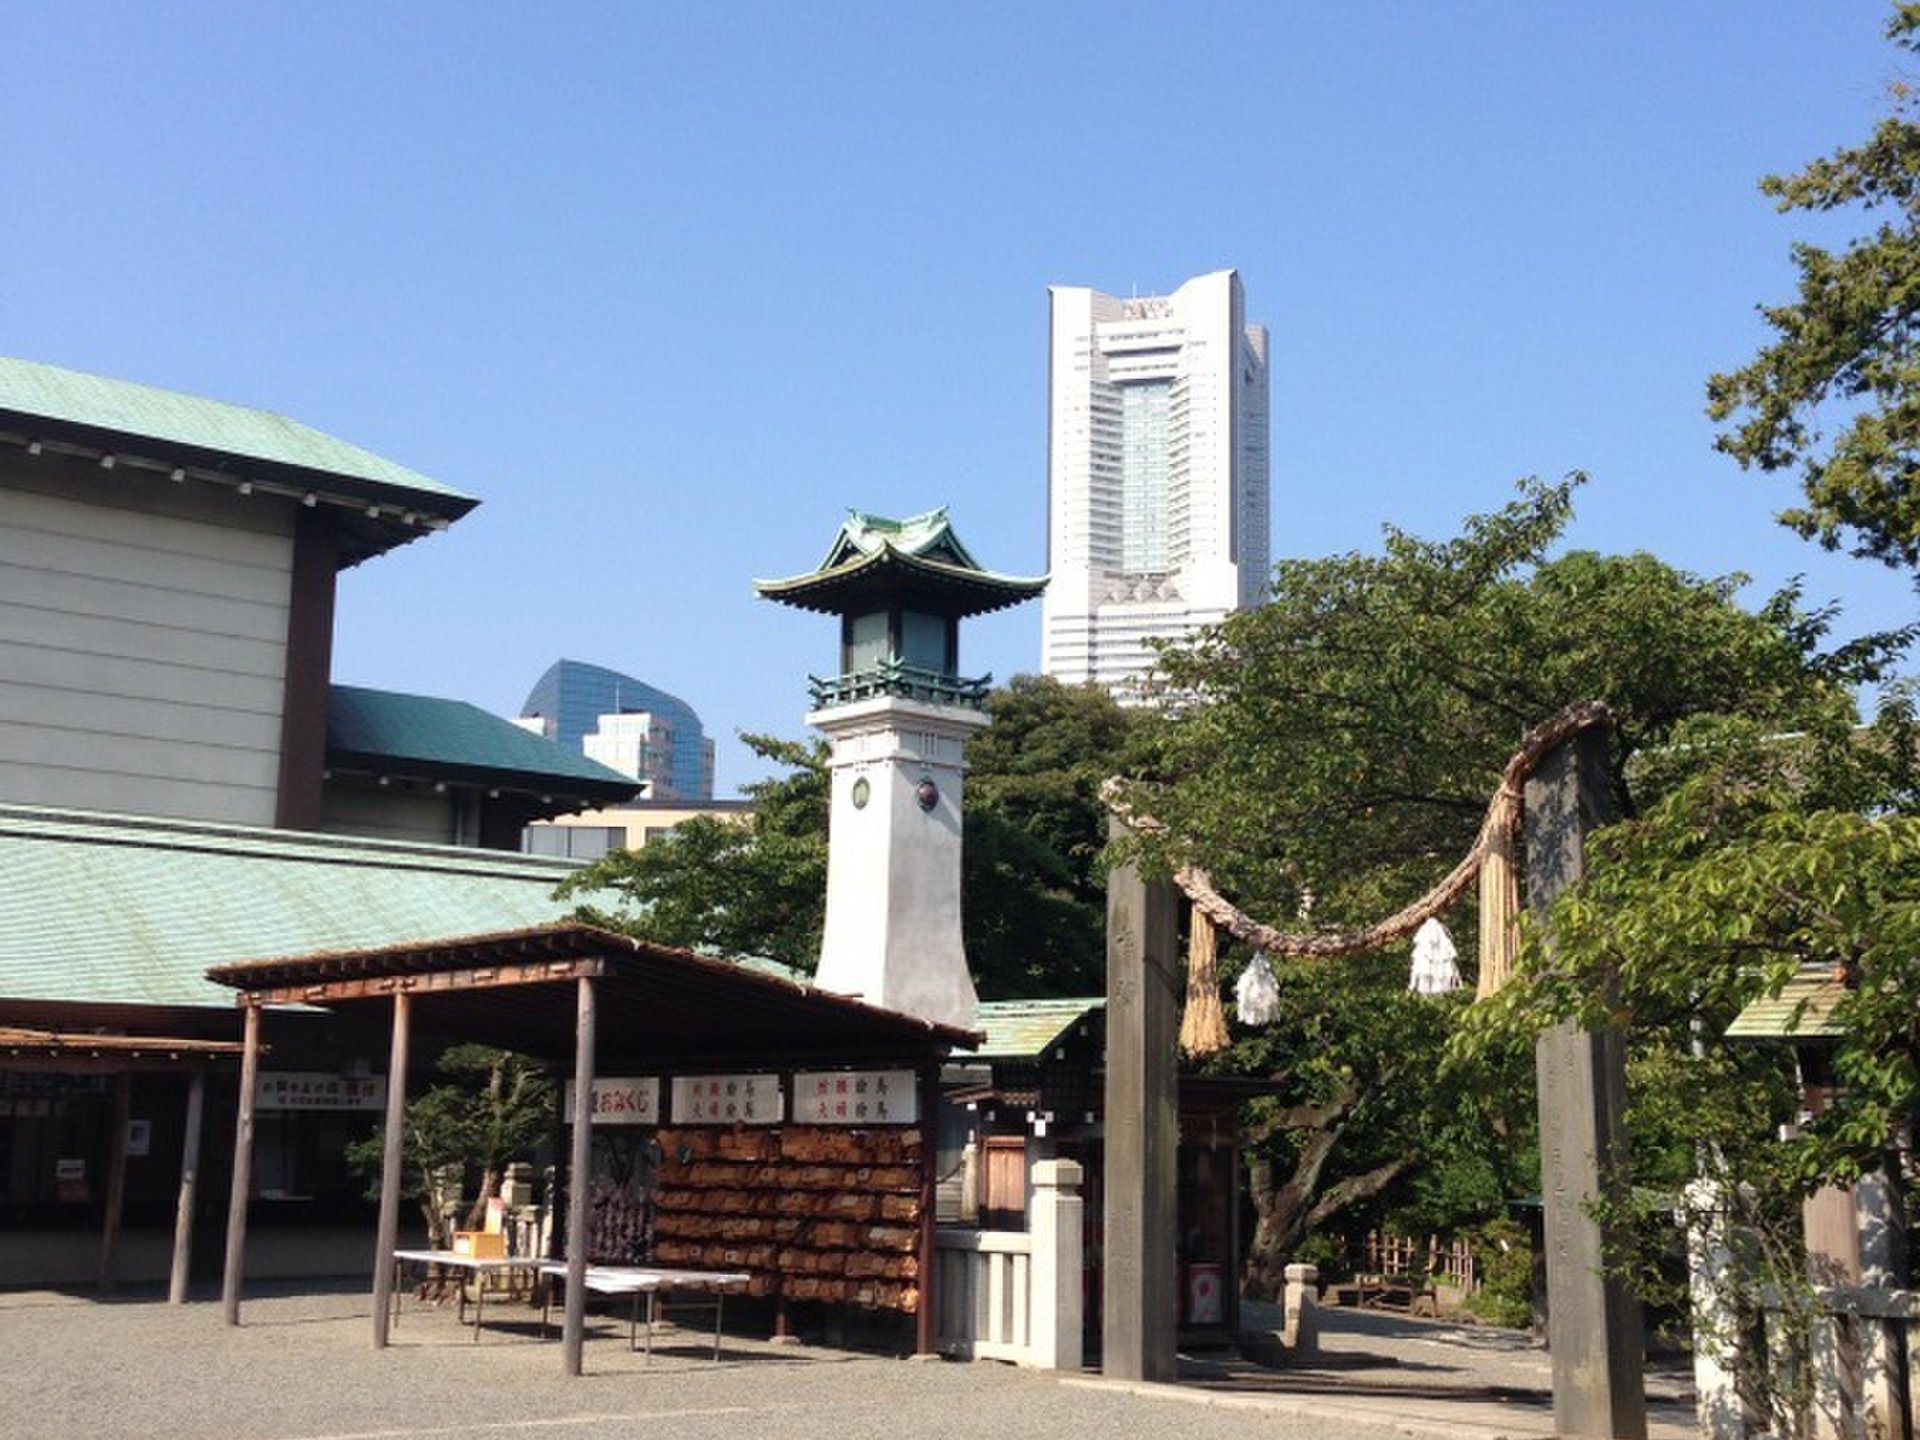 桜木町にひっそりたたずむ癒しの神社。神社とランドマークタワーの共演